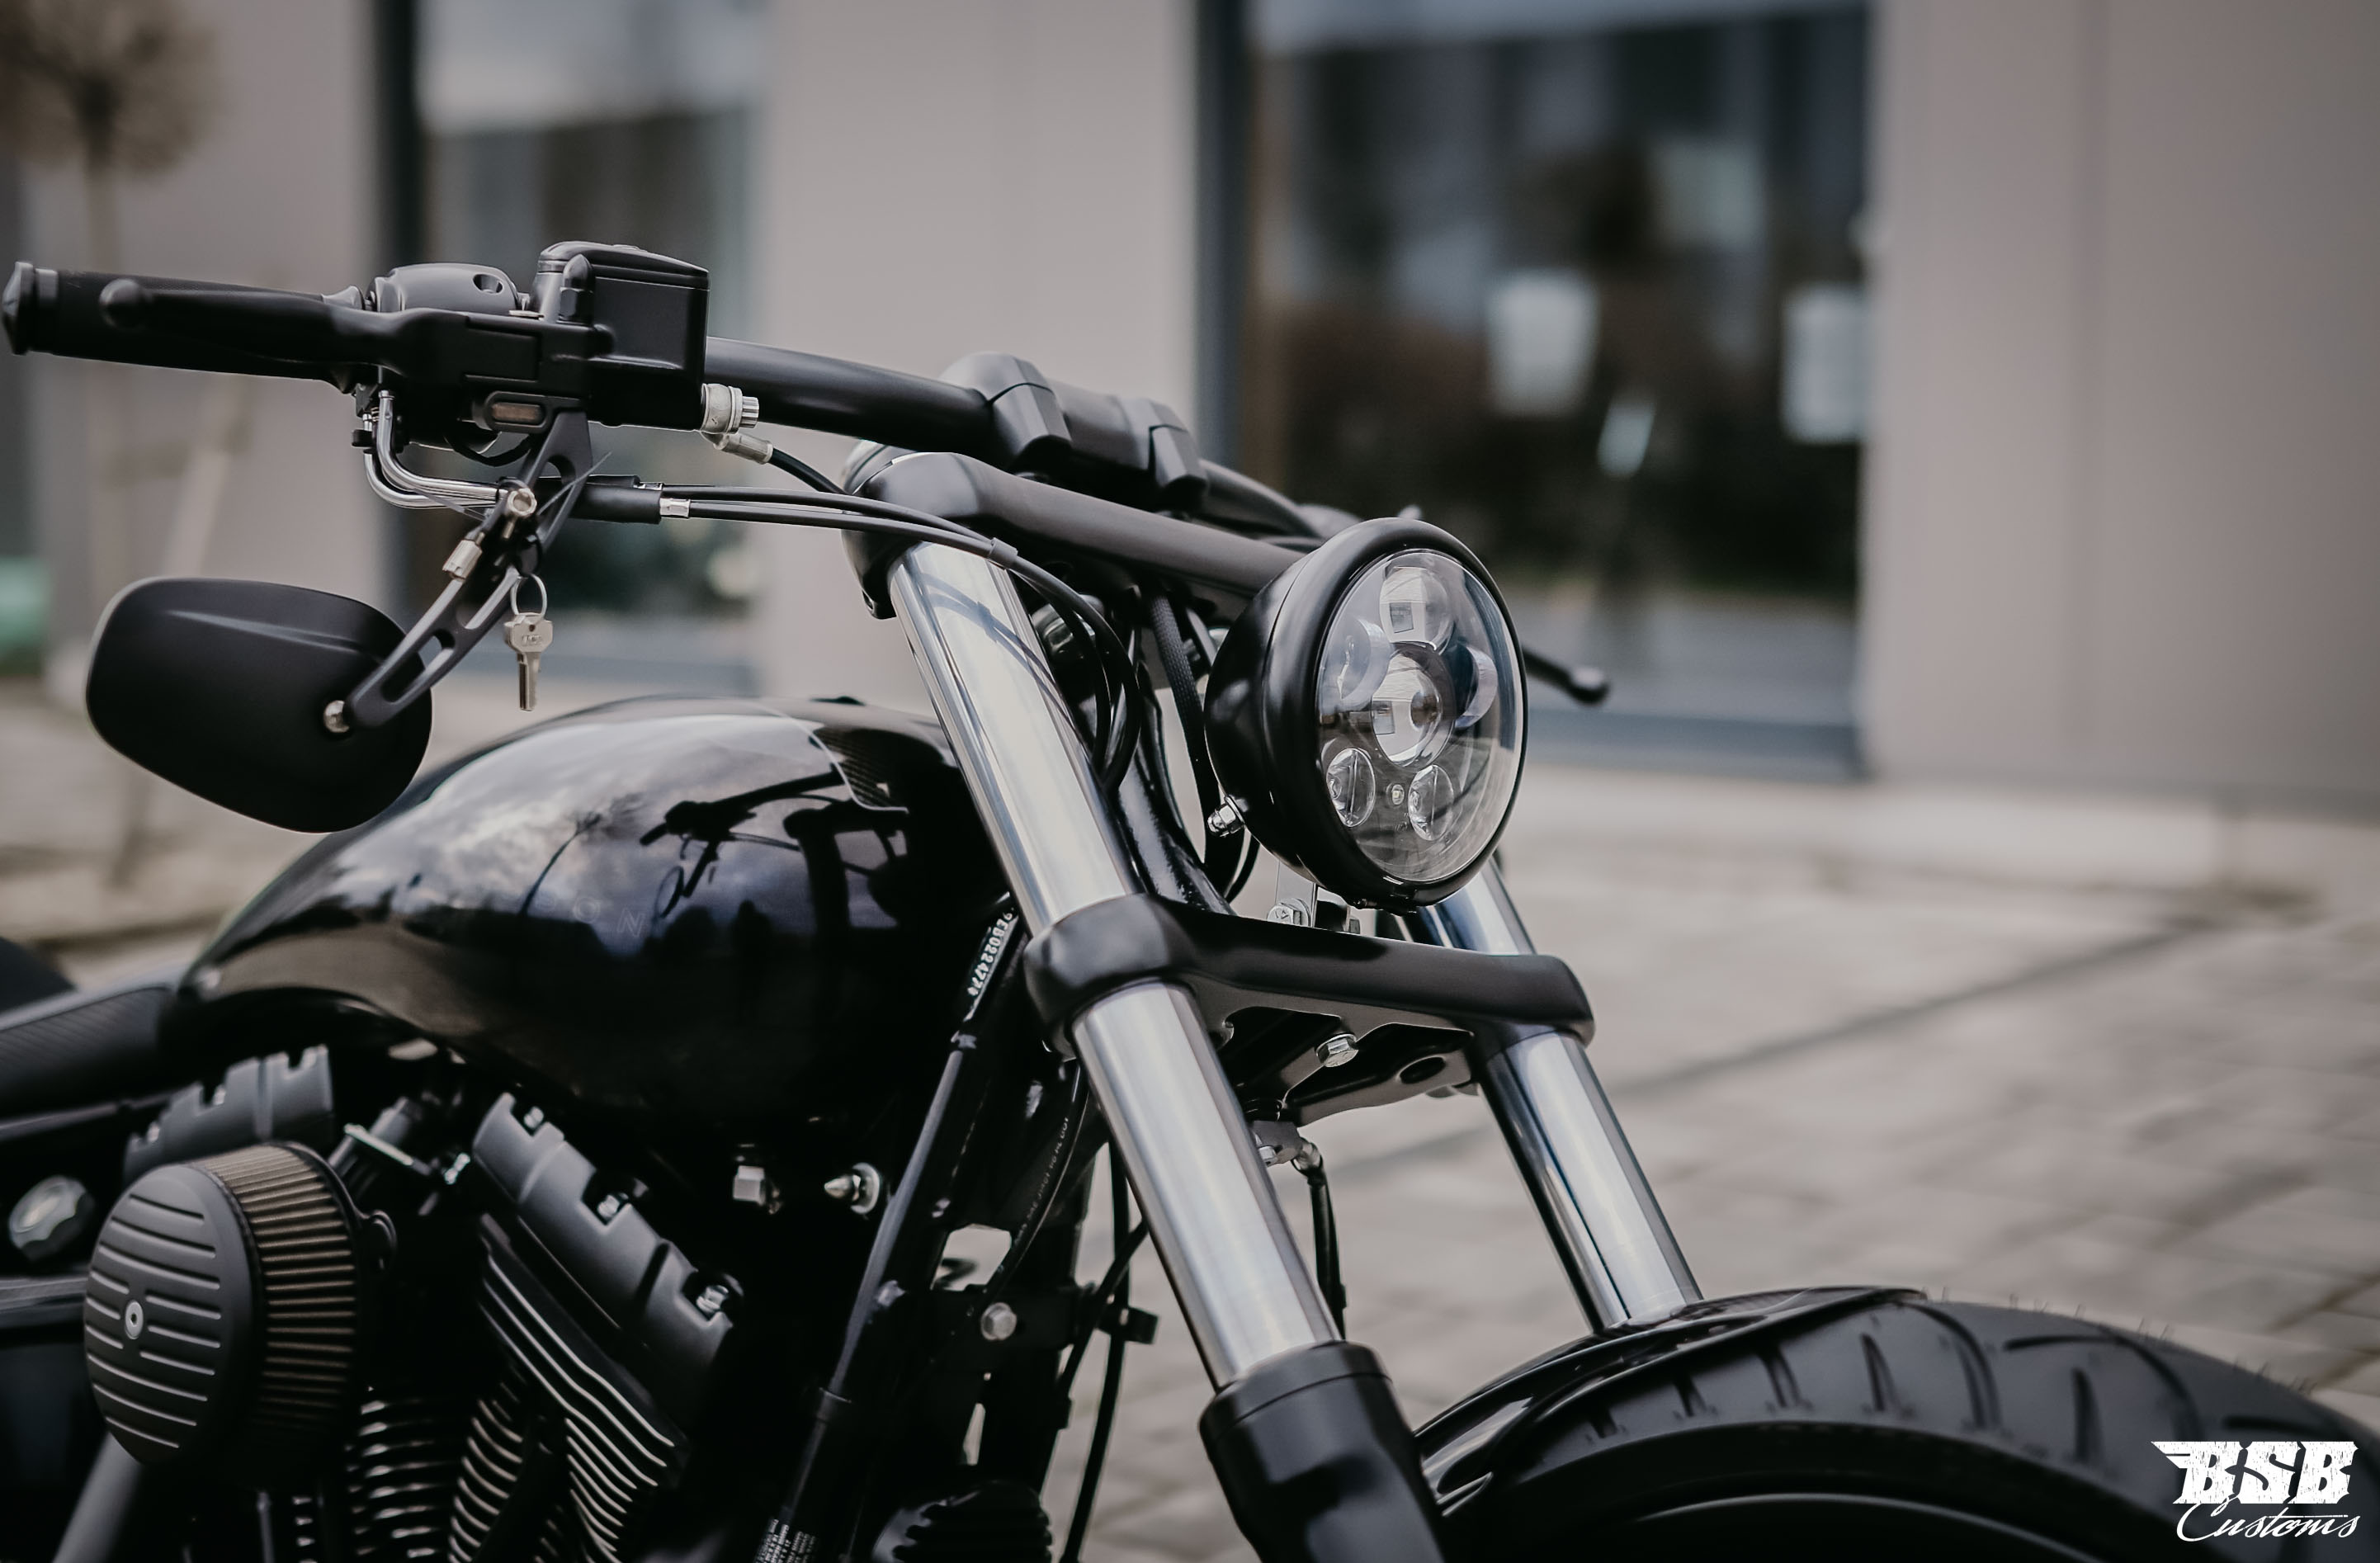 LED 5 3/4 Zoll schwarz, Standlicht, E-Zulassung für Harley Davidson SOFTAIL DYNA SPORTSTER Modelle